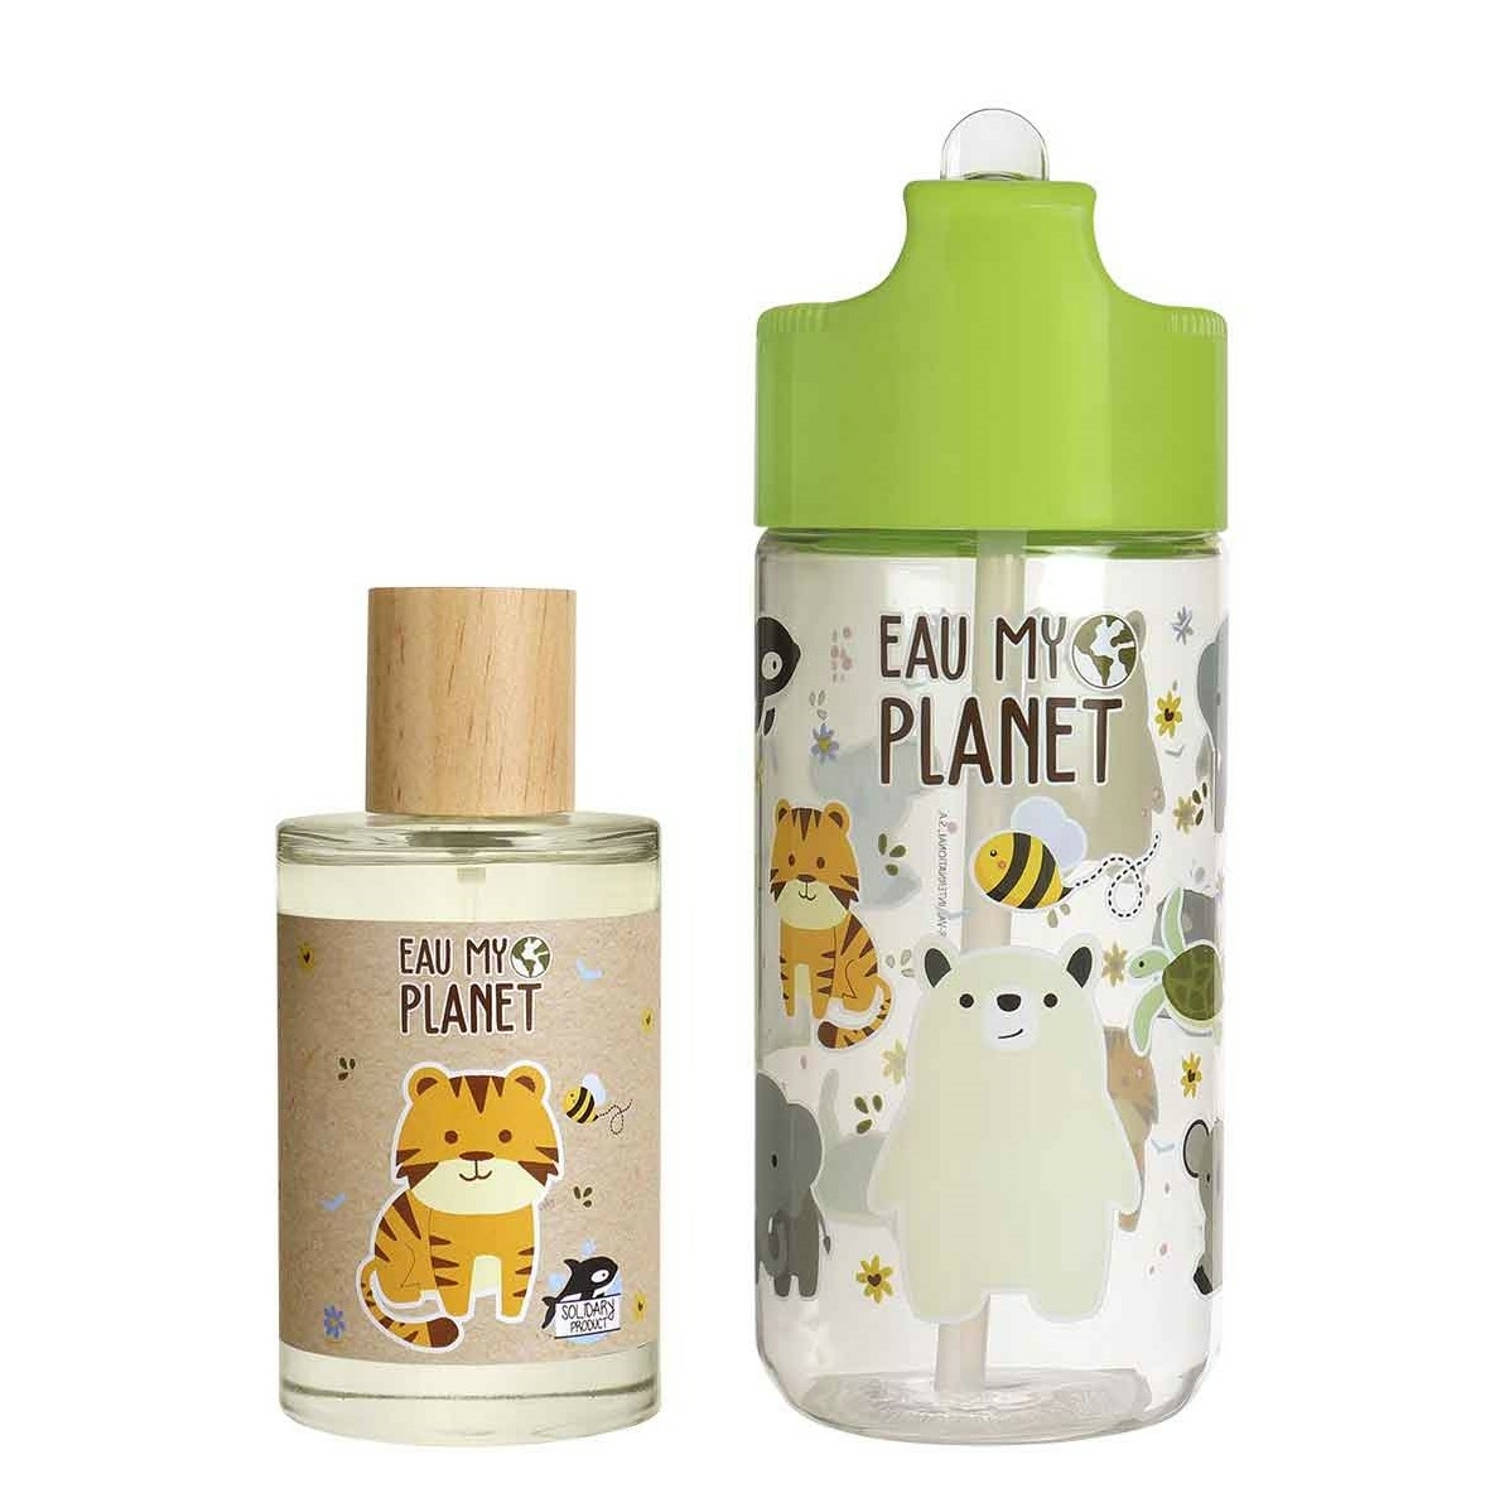 Eau My Planet Geschenkset - Eau De Toilette100 ml & Drinkfles Kinderen - Vegan & 95% Natuurlijke Ingrediënten